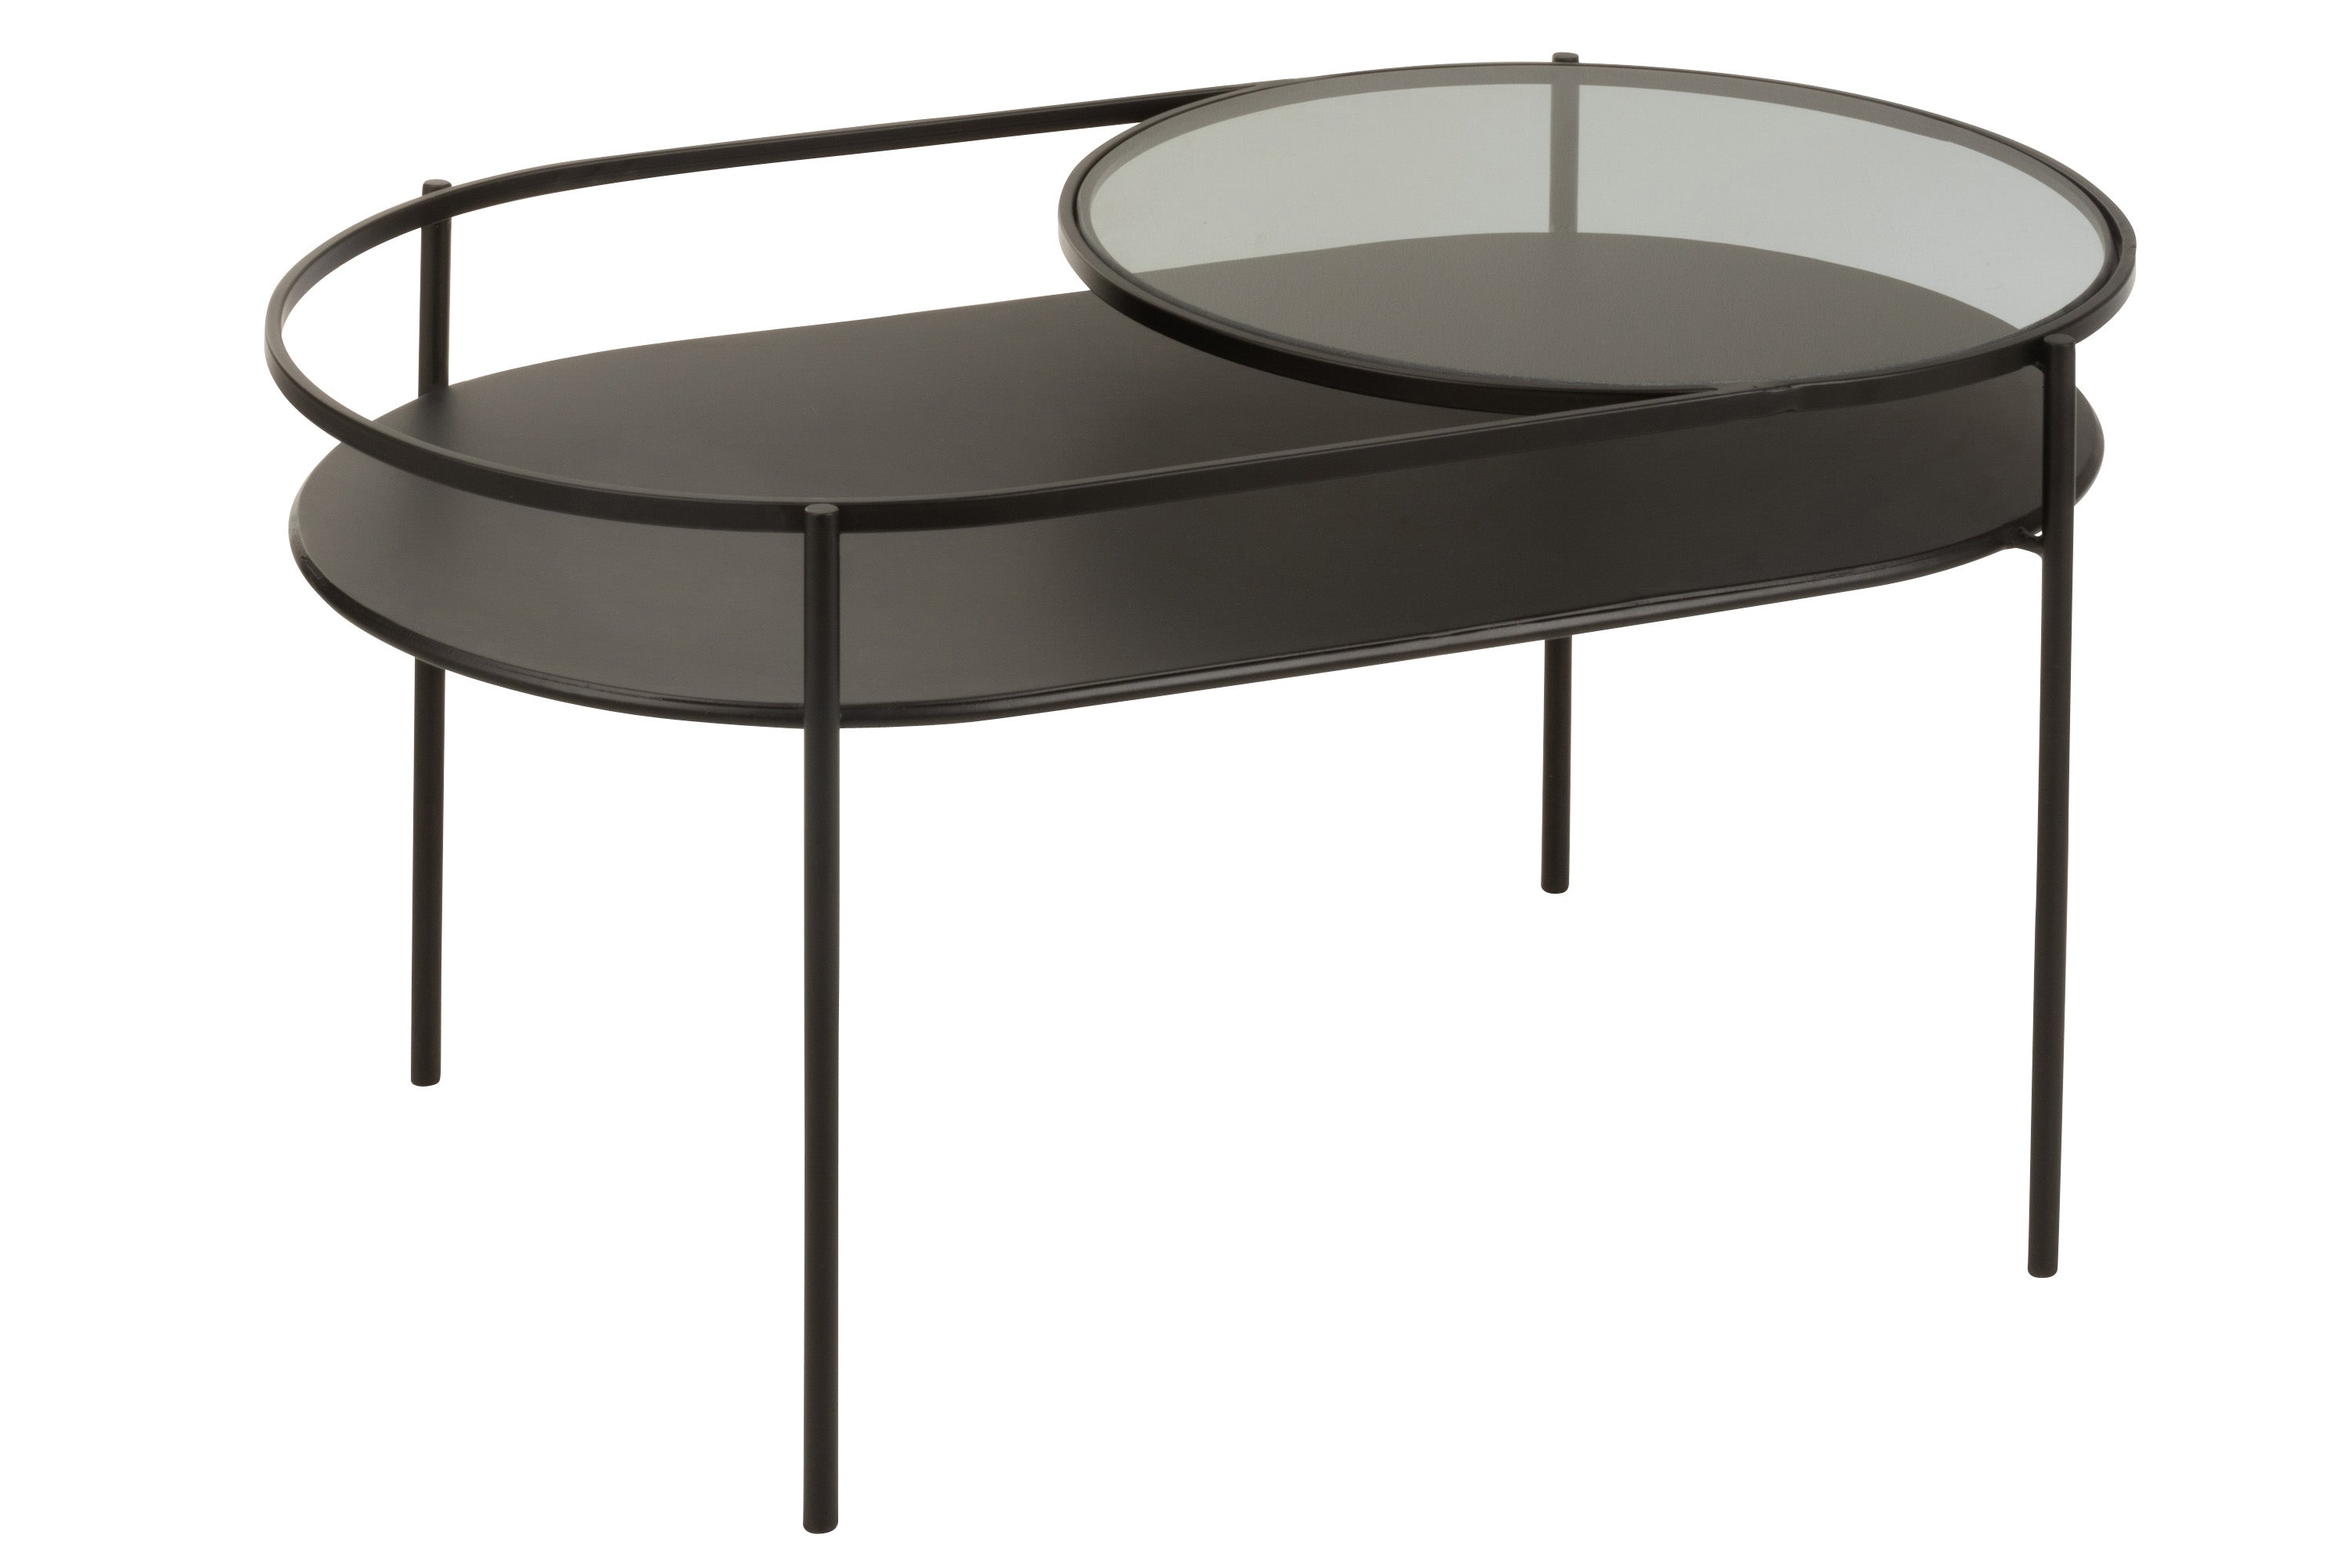 Ovaler Couchtisch aus schwarzem Metall mit umlaufender Reling, auf der an einer Seite eine runde Glasplatte als zusätzliche Ablagefläche angebracht ist.